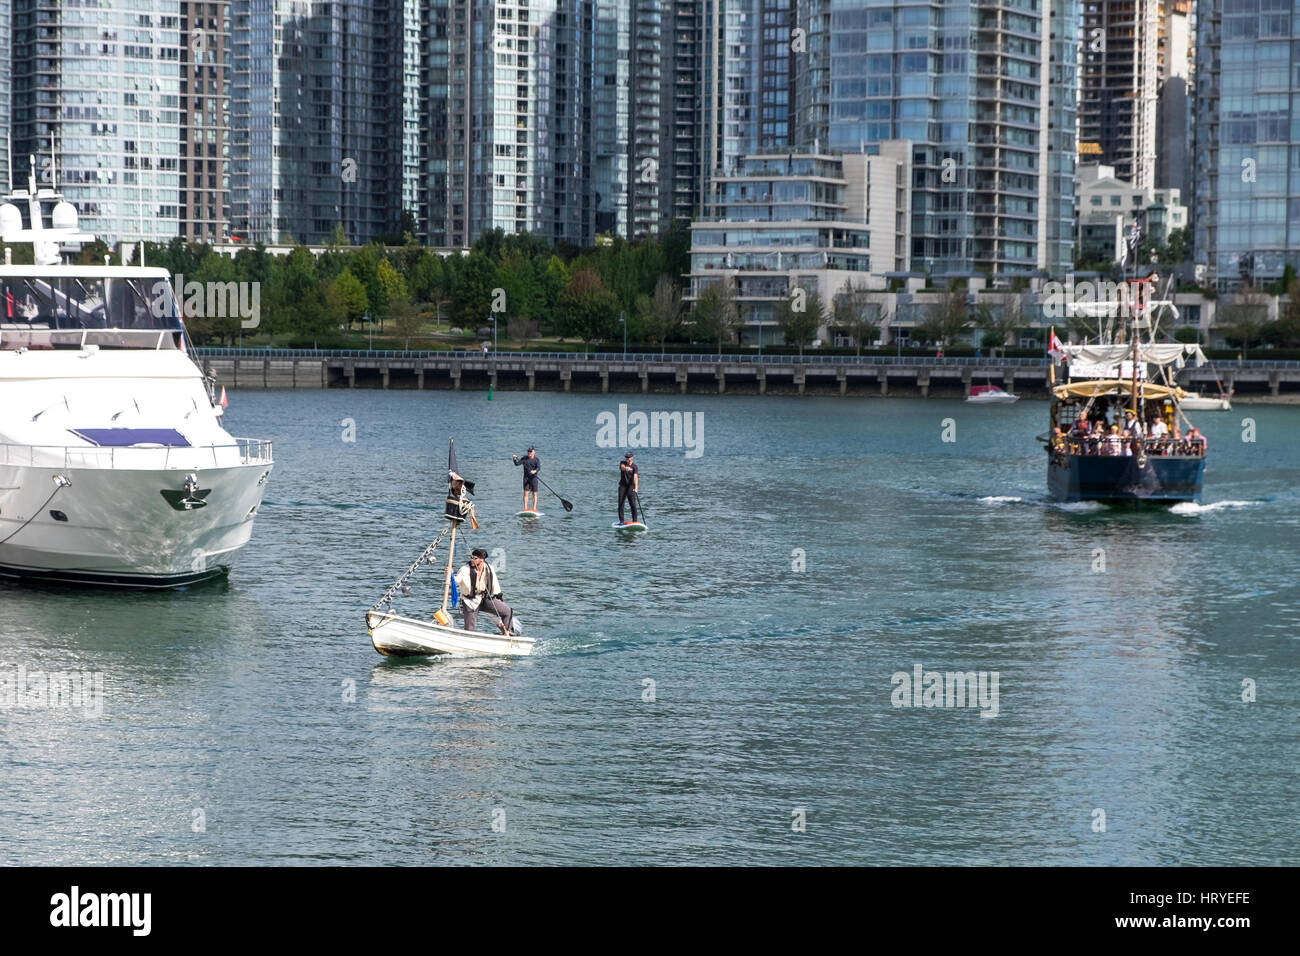 Un uomo vestito come un pirata in una barca bianca è inseguito da un grande nero barca con vele verso il basso e due persone a paddle boards. False Creek, Vancouver, BC. Foto Stock